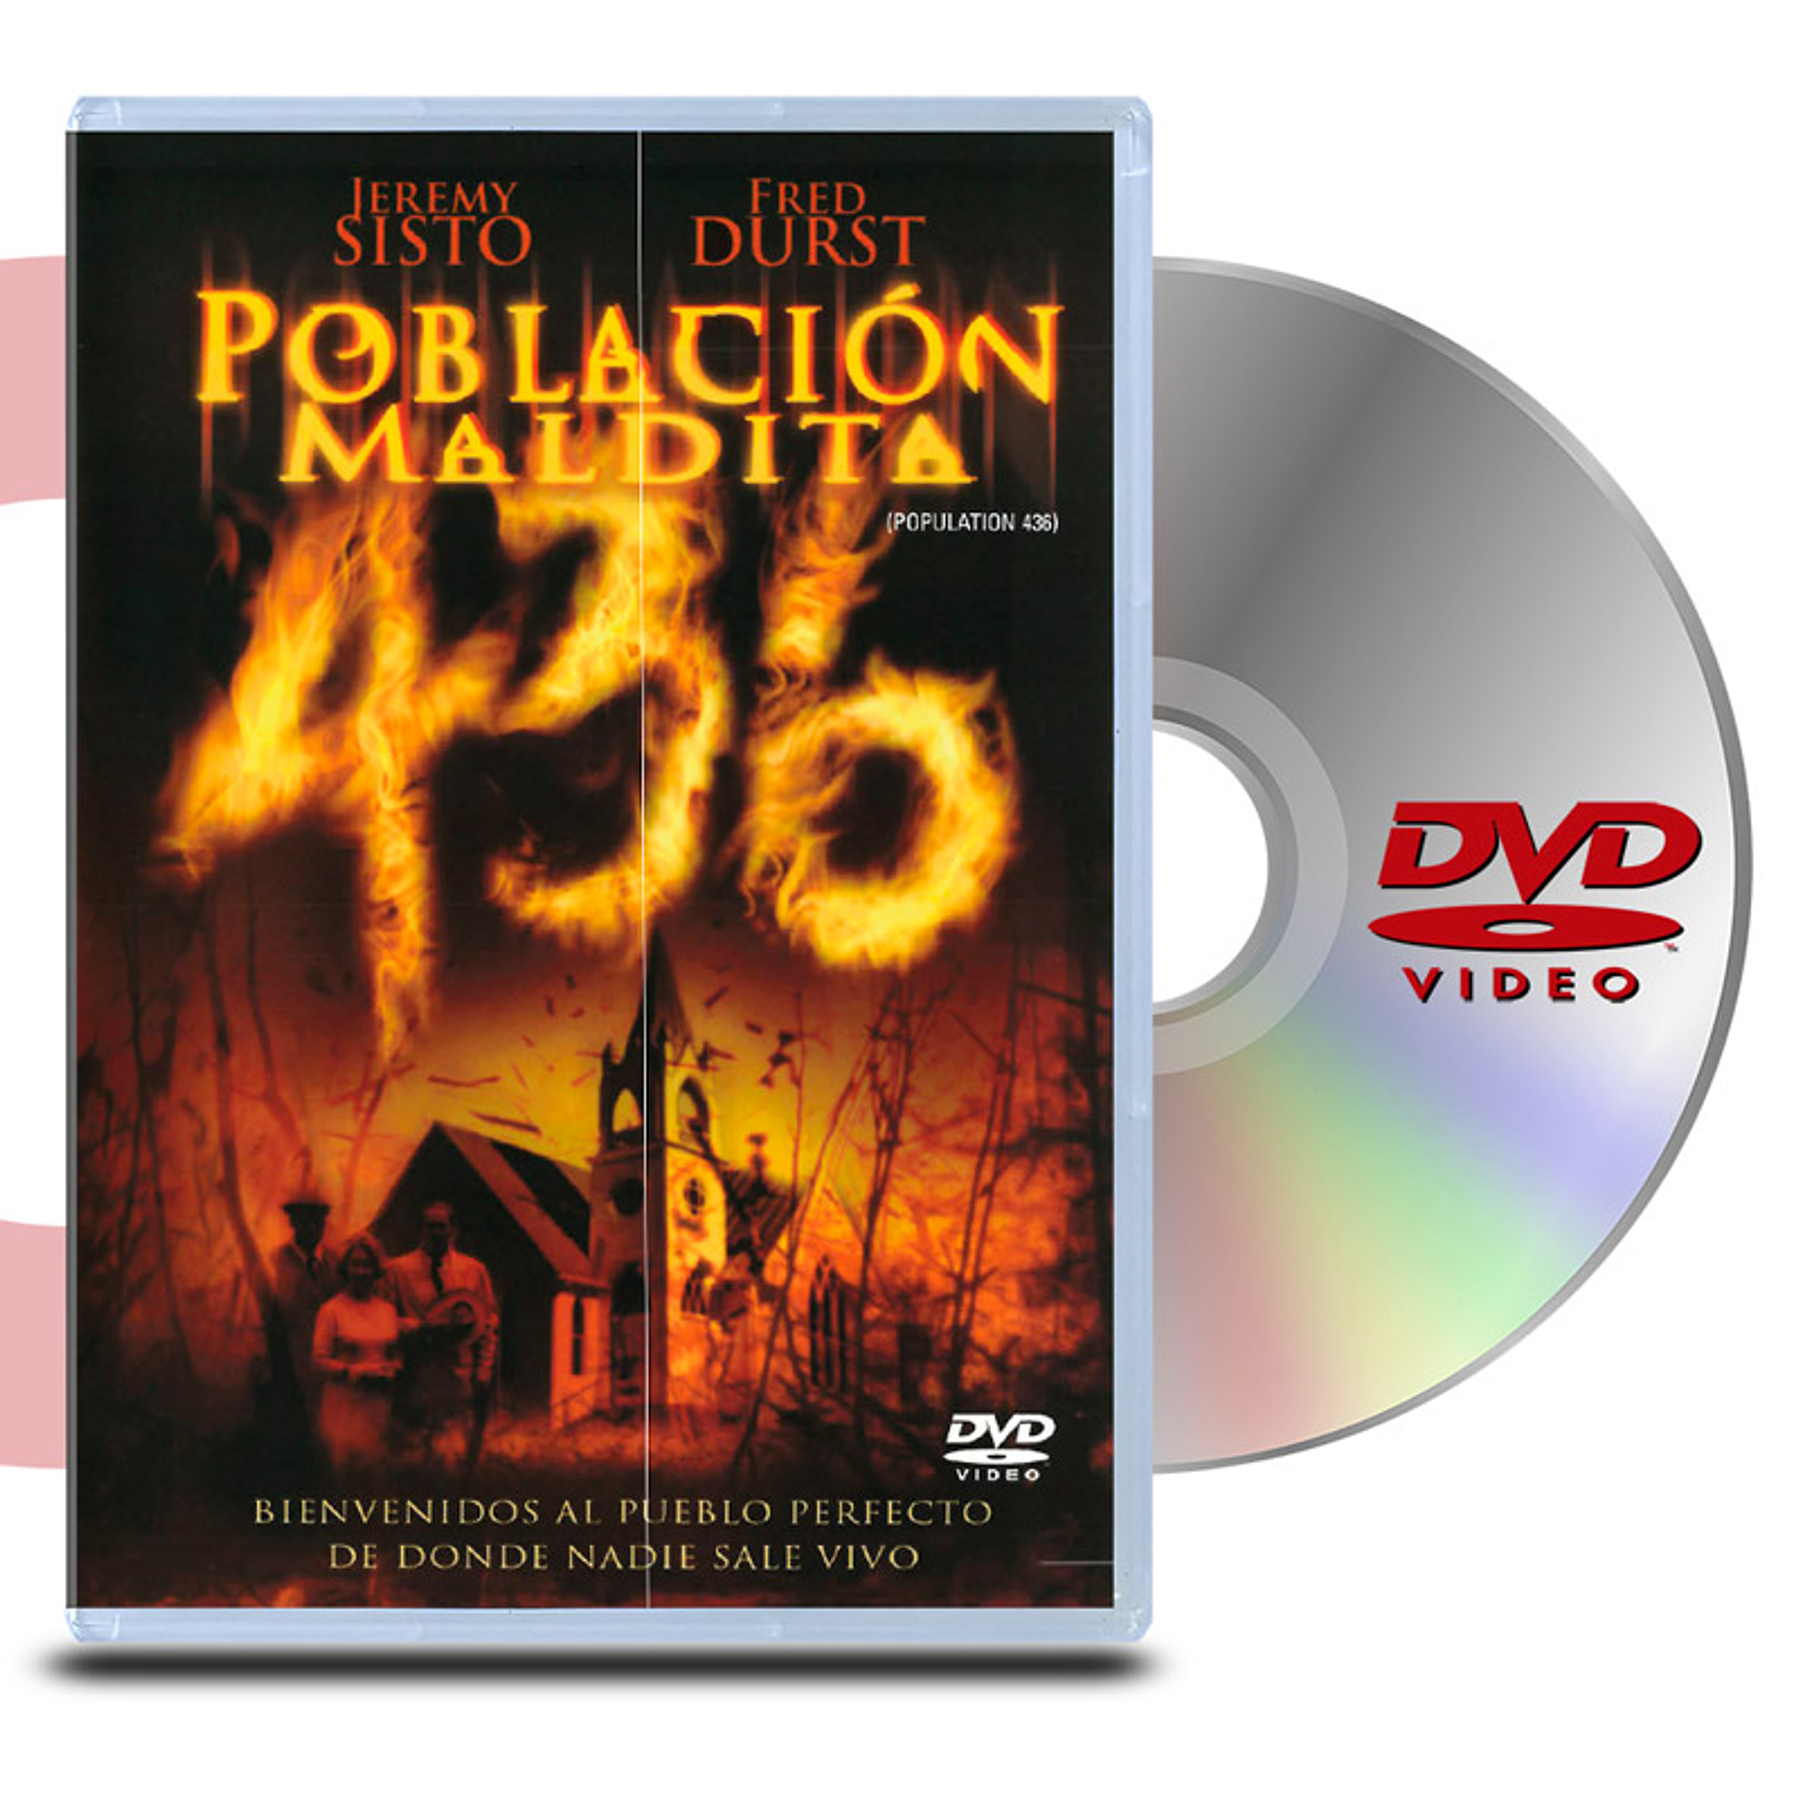 DVD POBLACION MALDITA 436